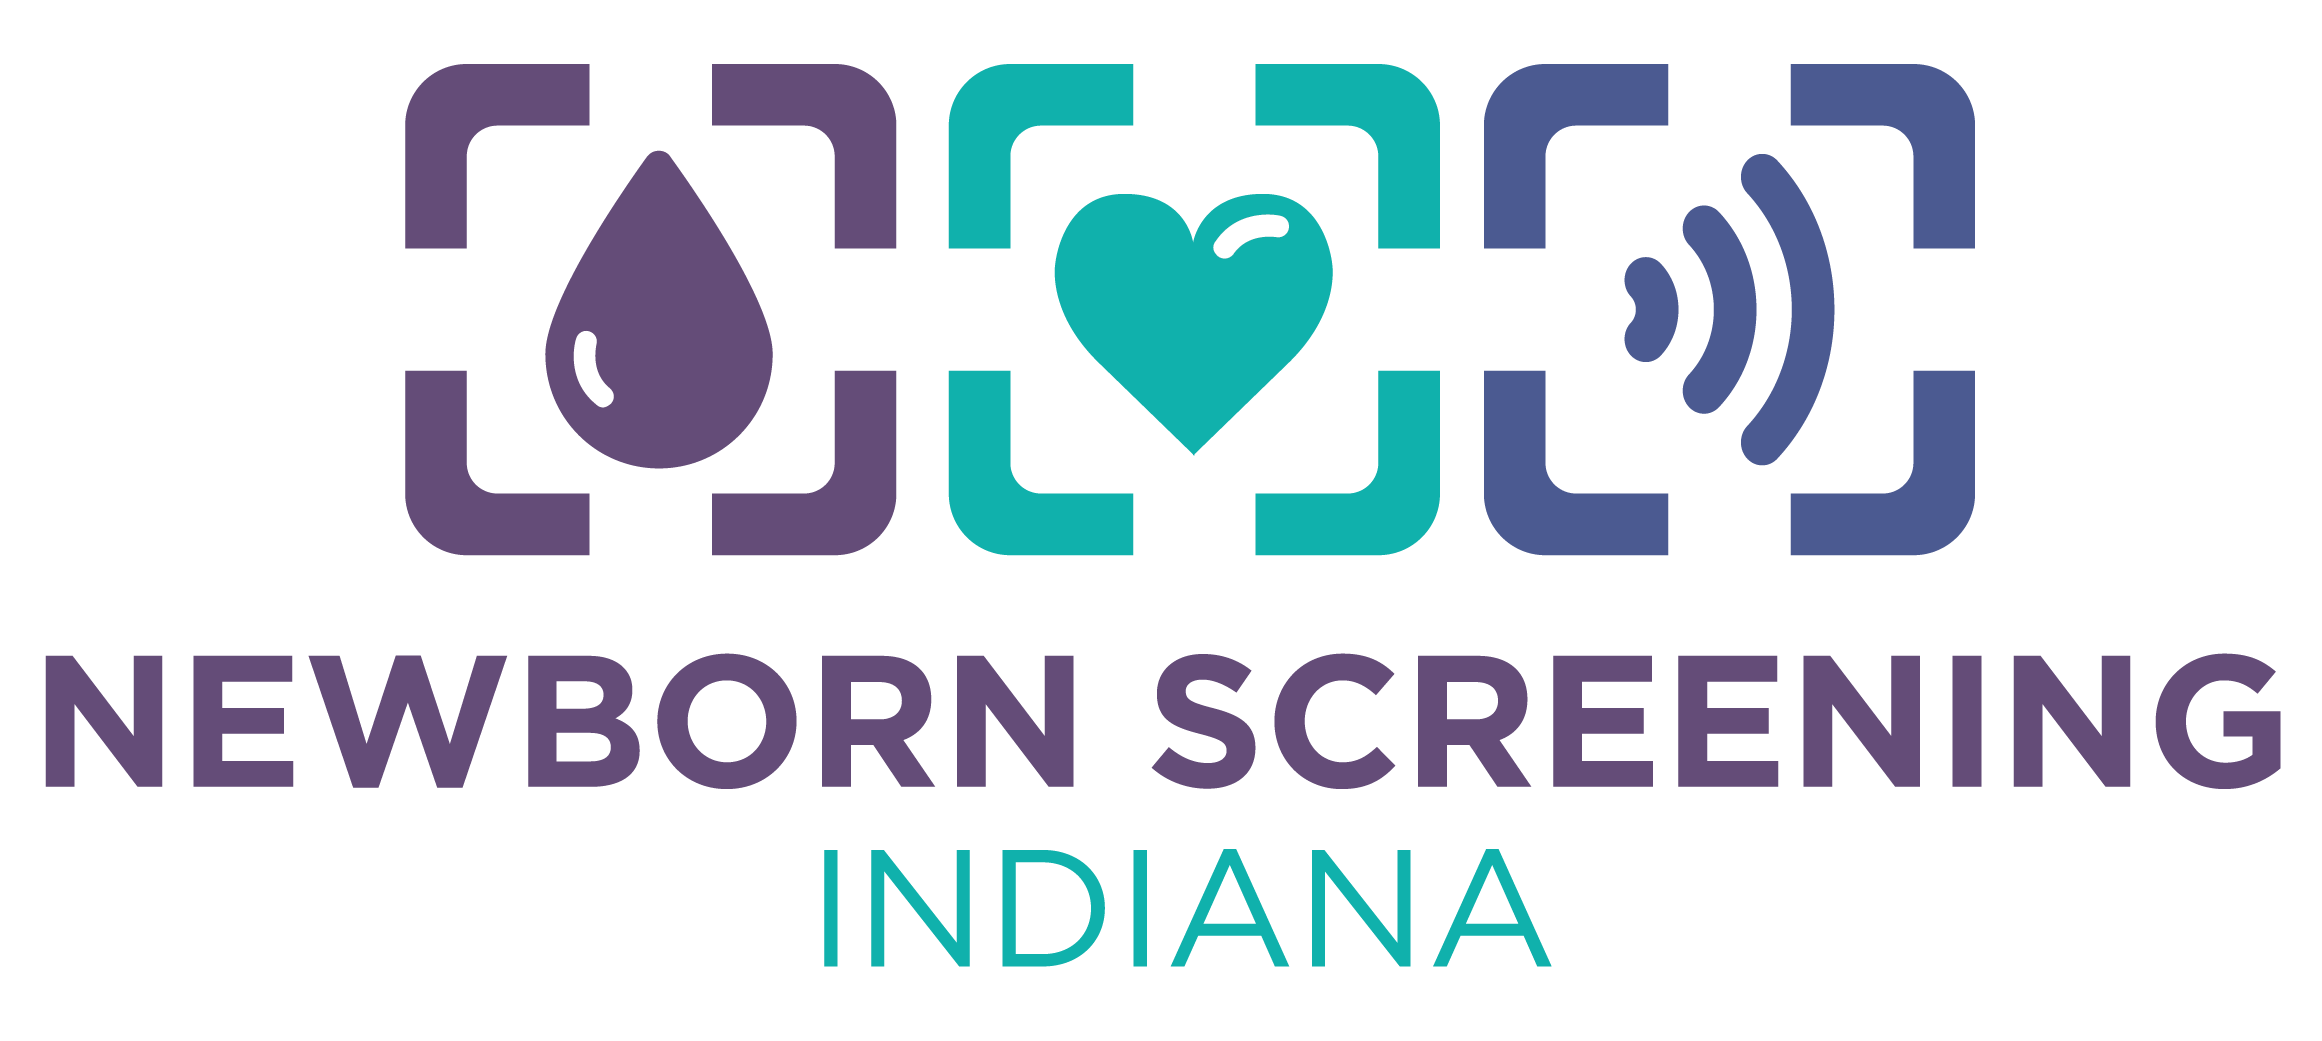 Newborn Screening Indiana